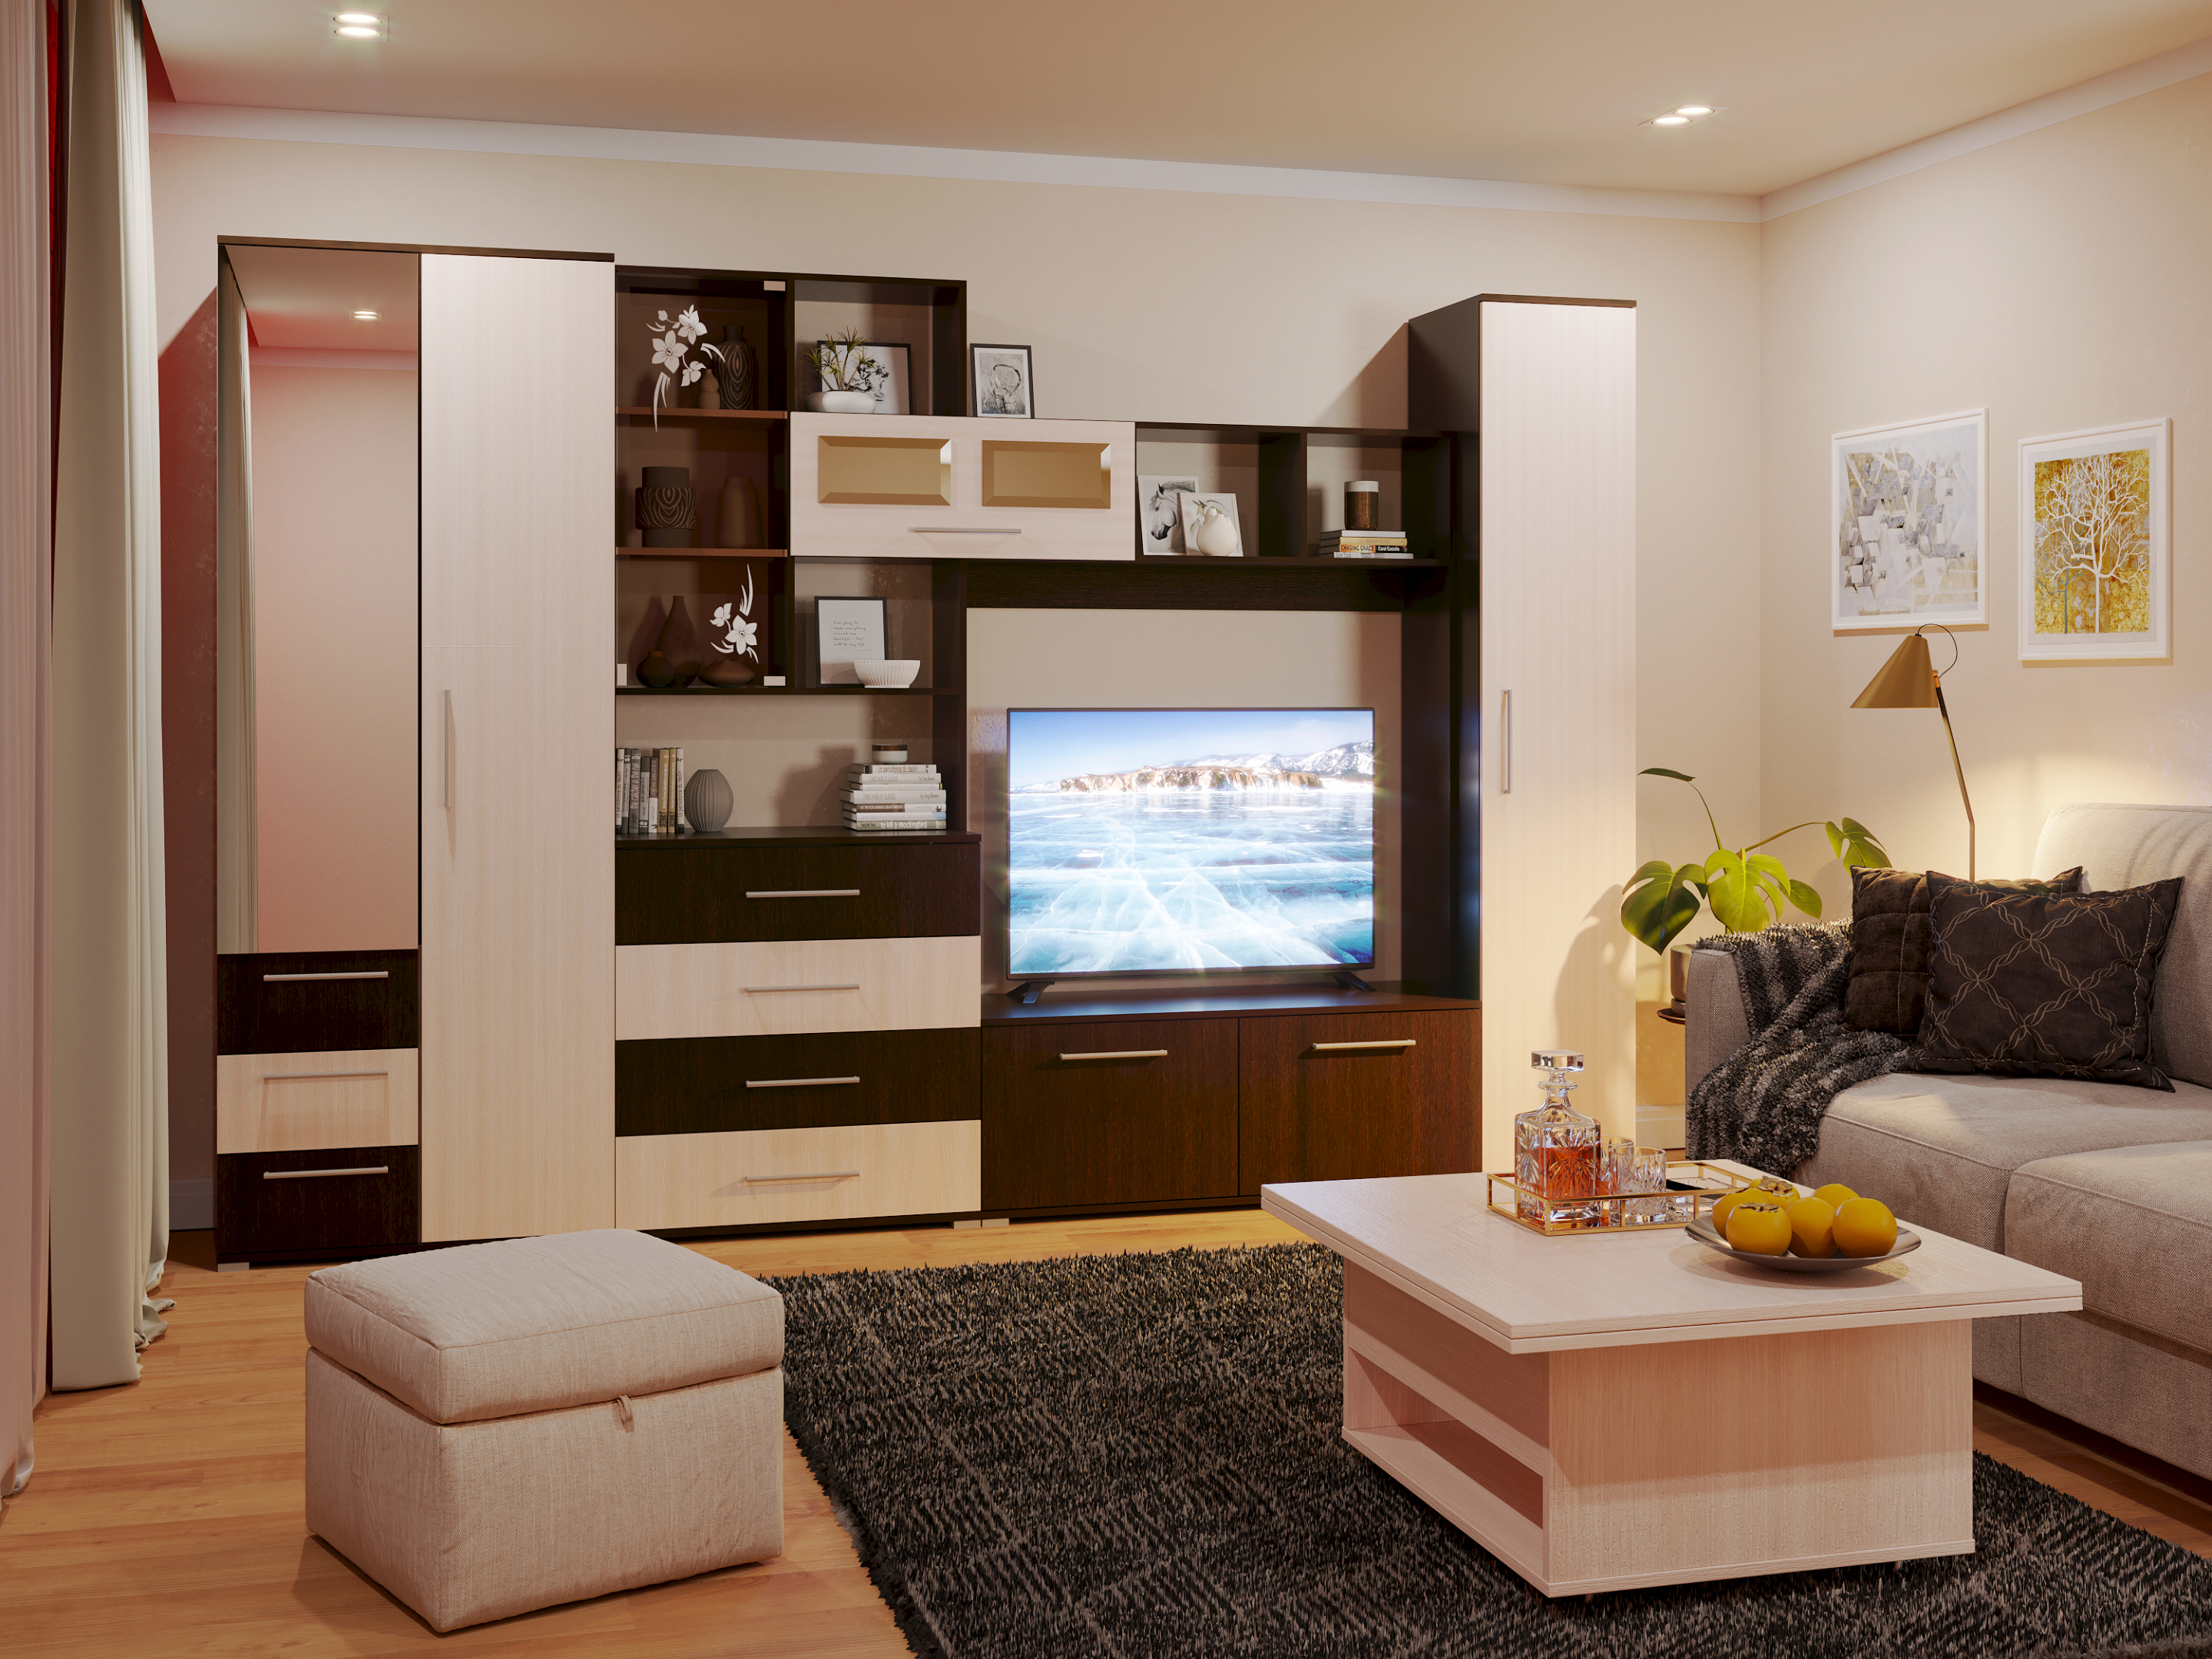 Visualizzazione di mobili soggiorno in 3d max corona render immagine